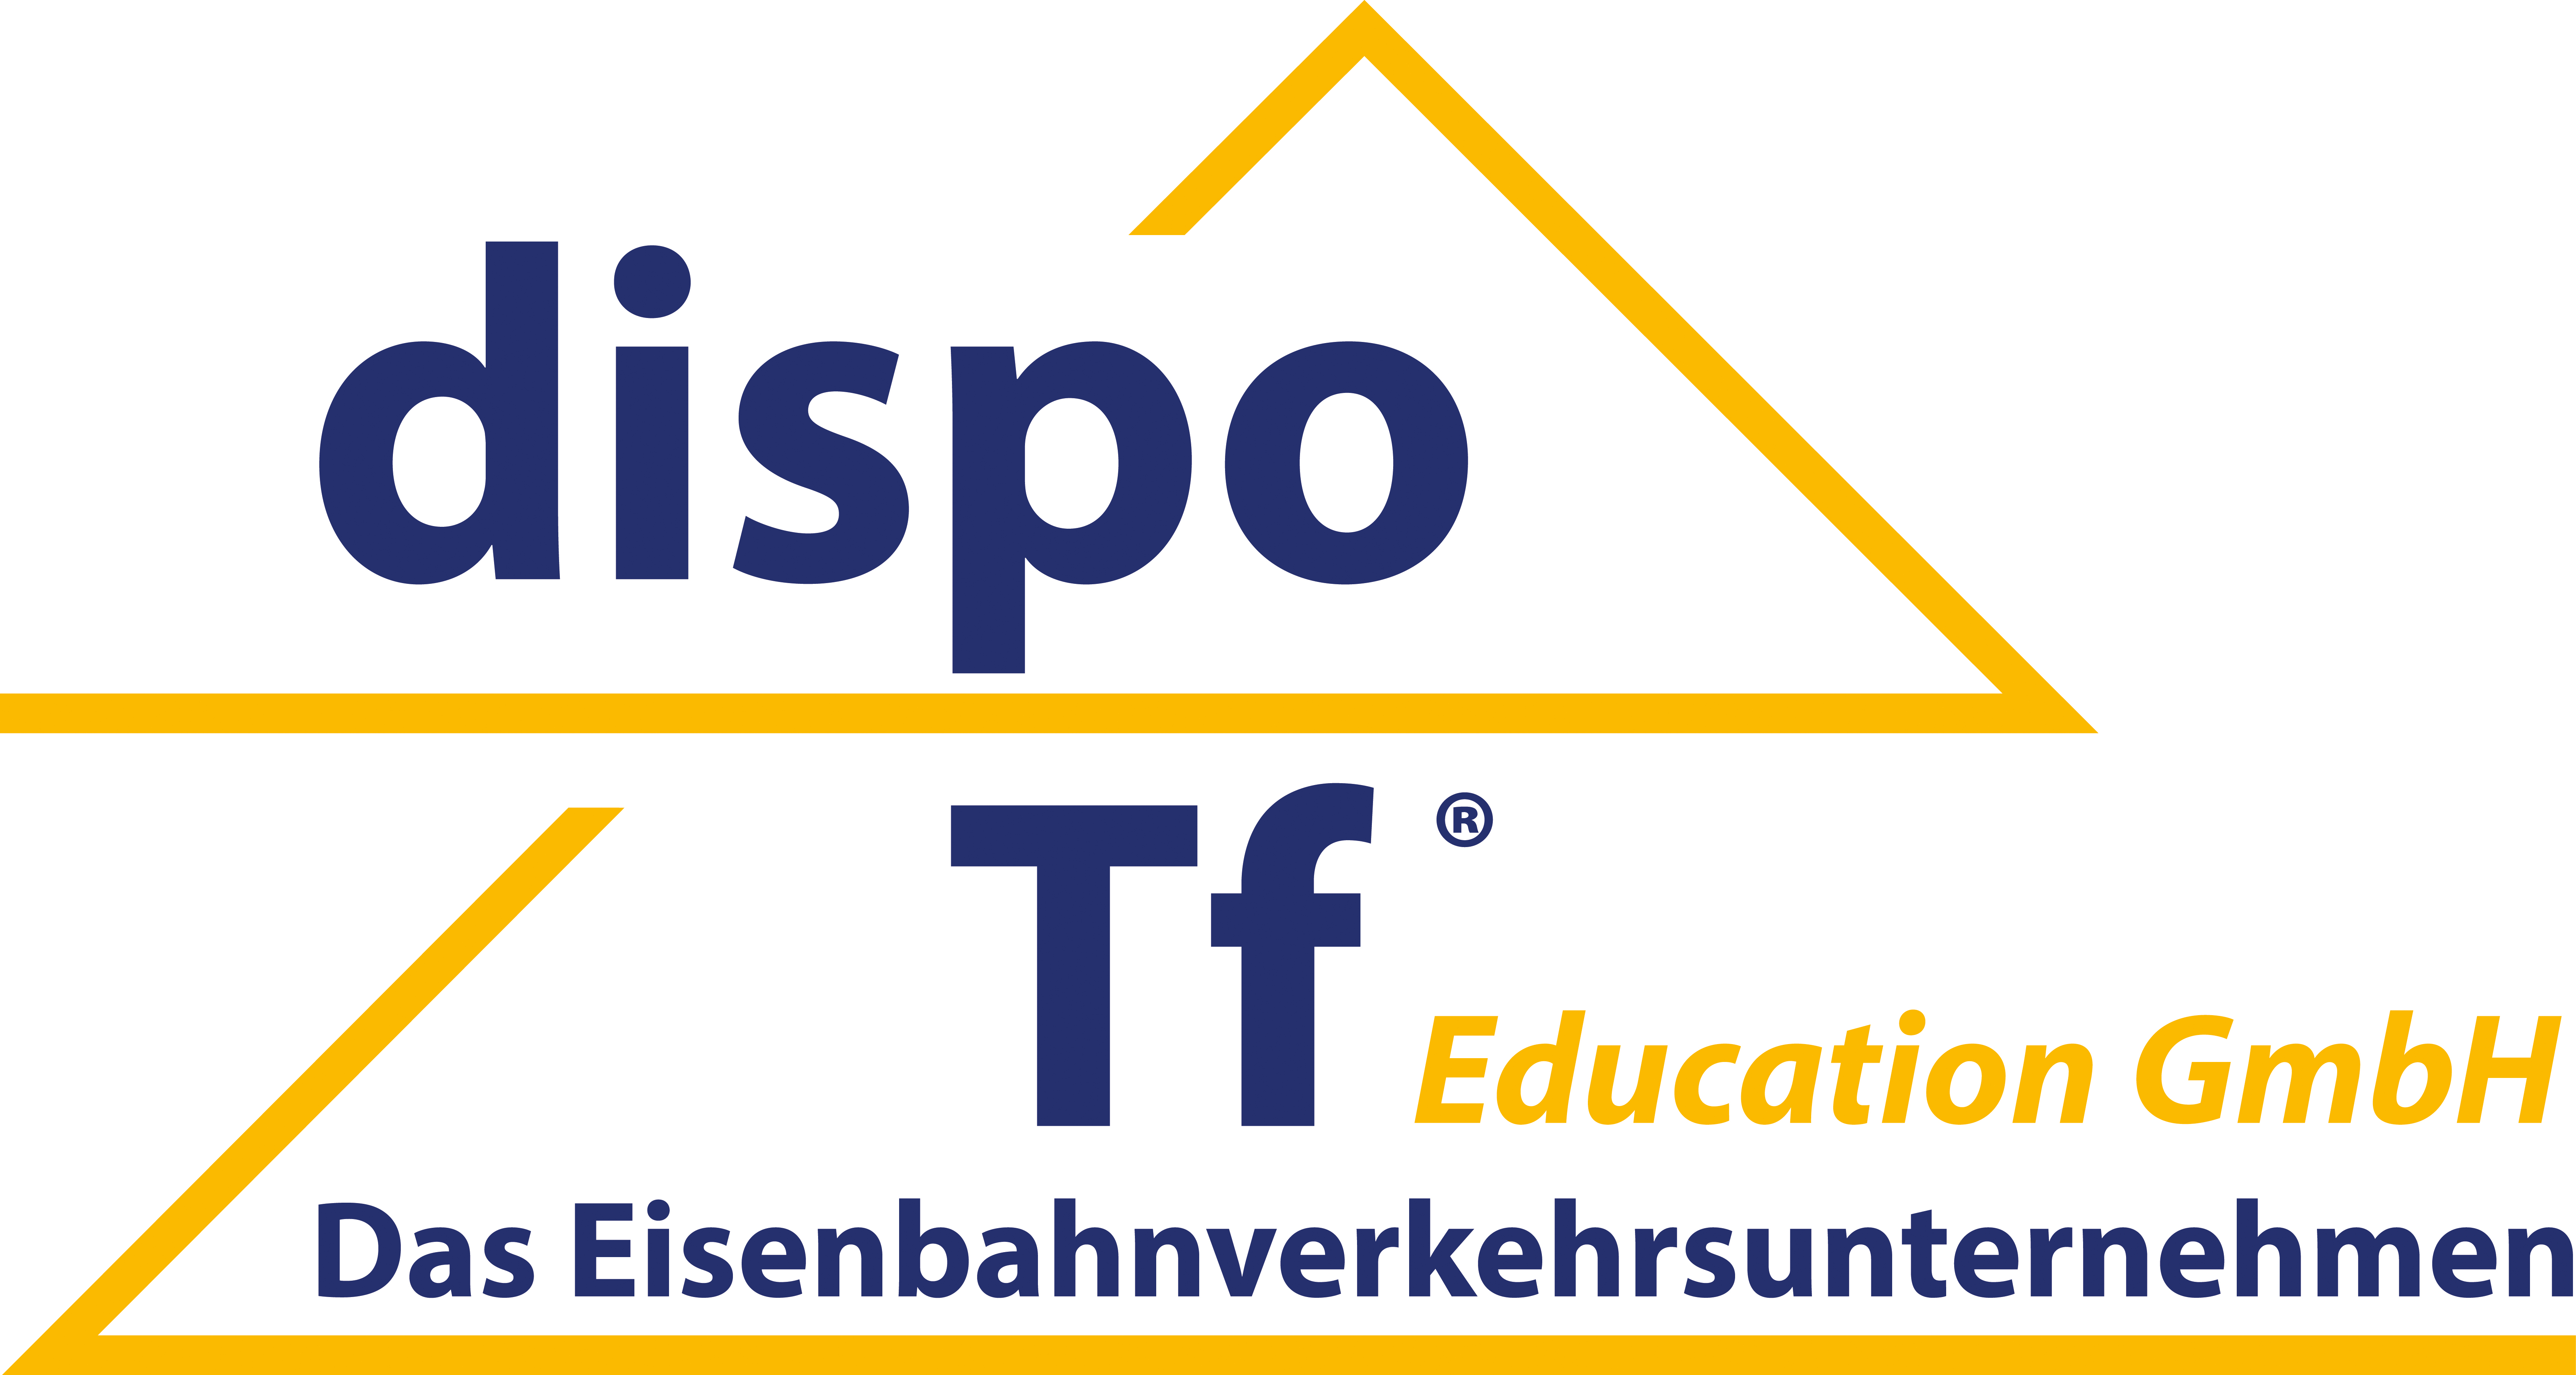 Dozent / Trainer für Triebfahrzeugführer Ausbildung in Raunheim bei Frankfurt/Mai (m,w,d)